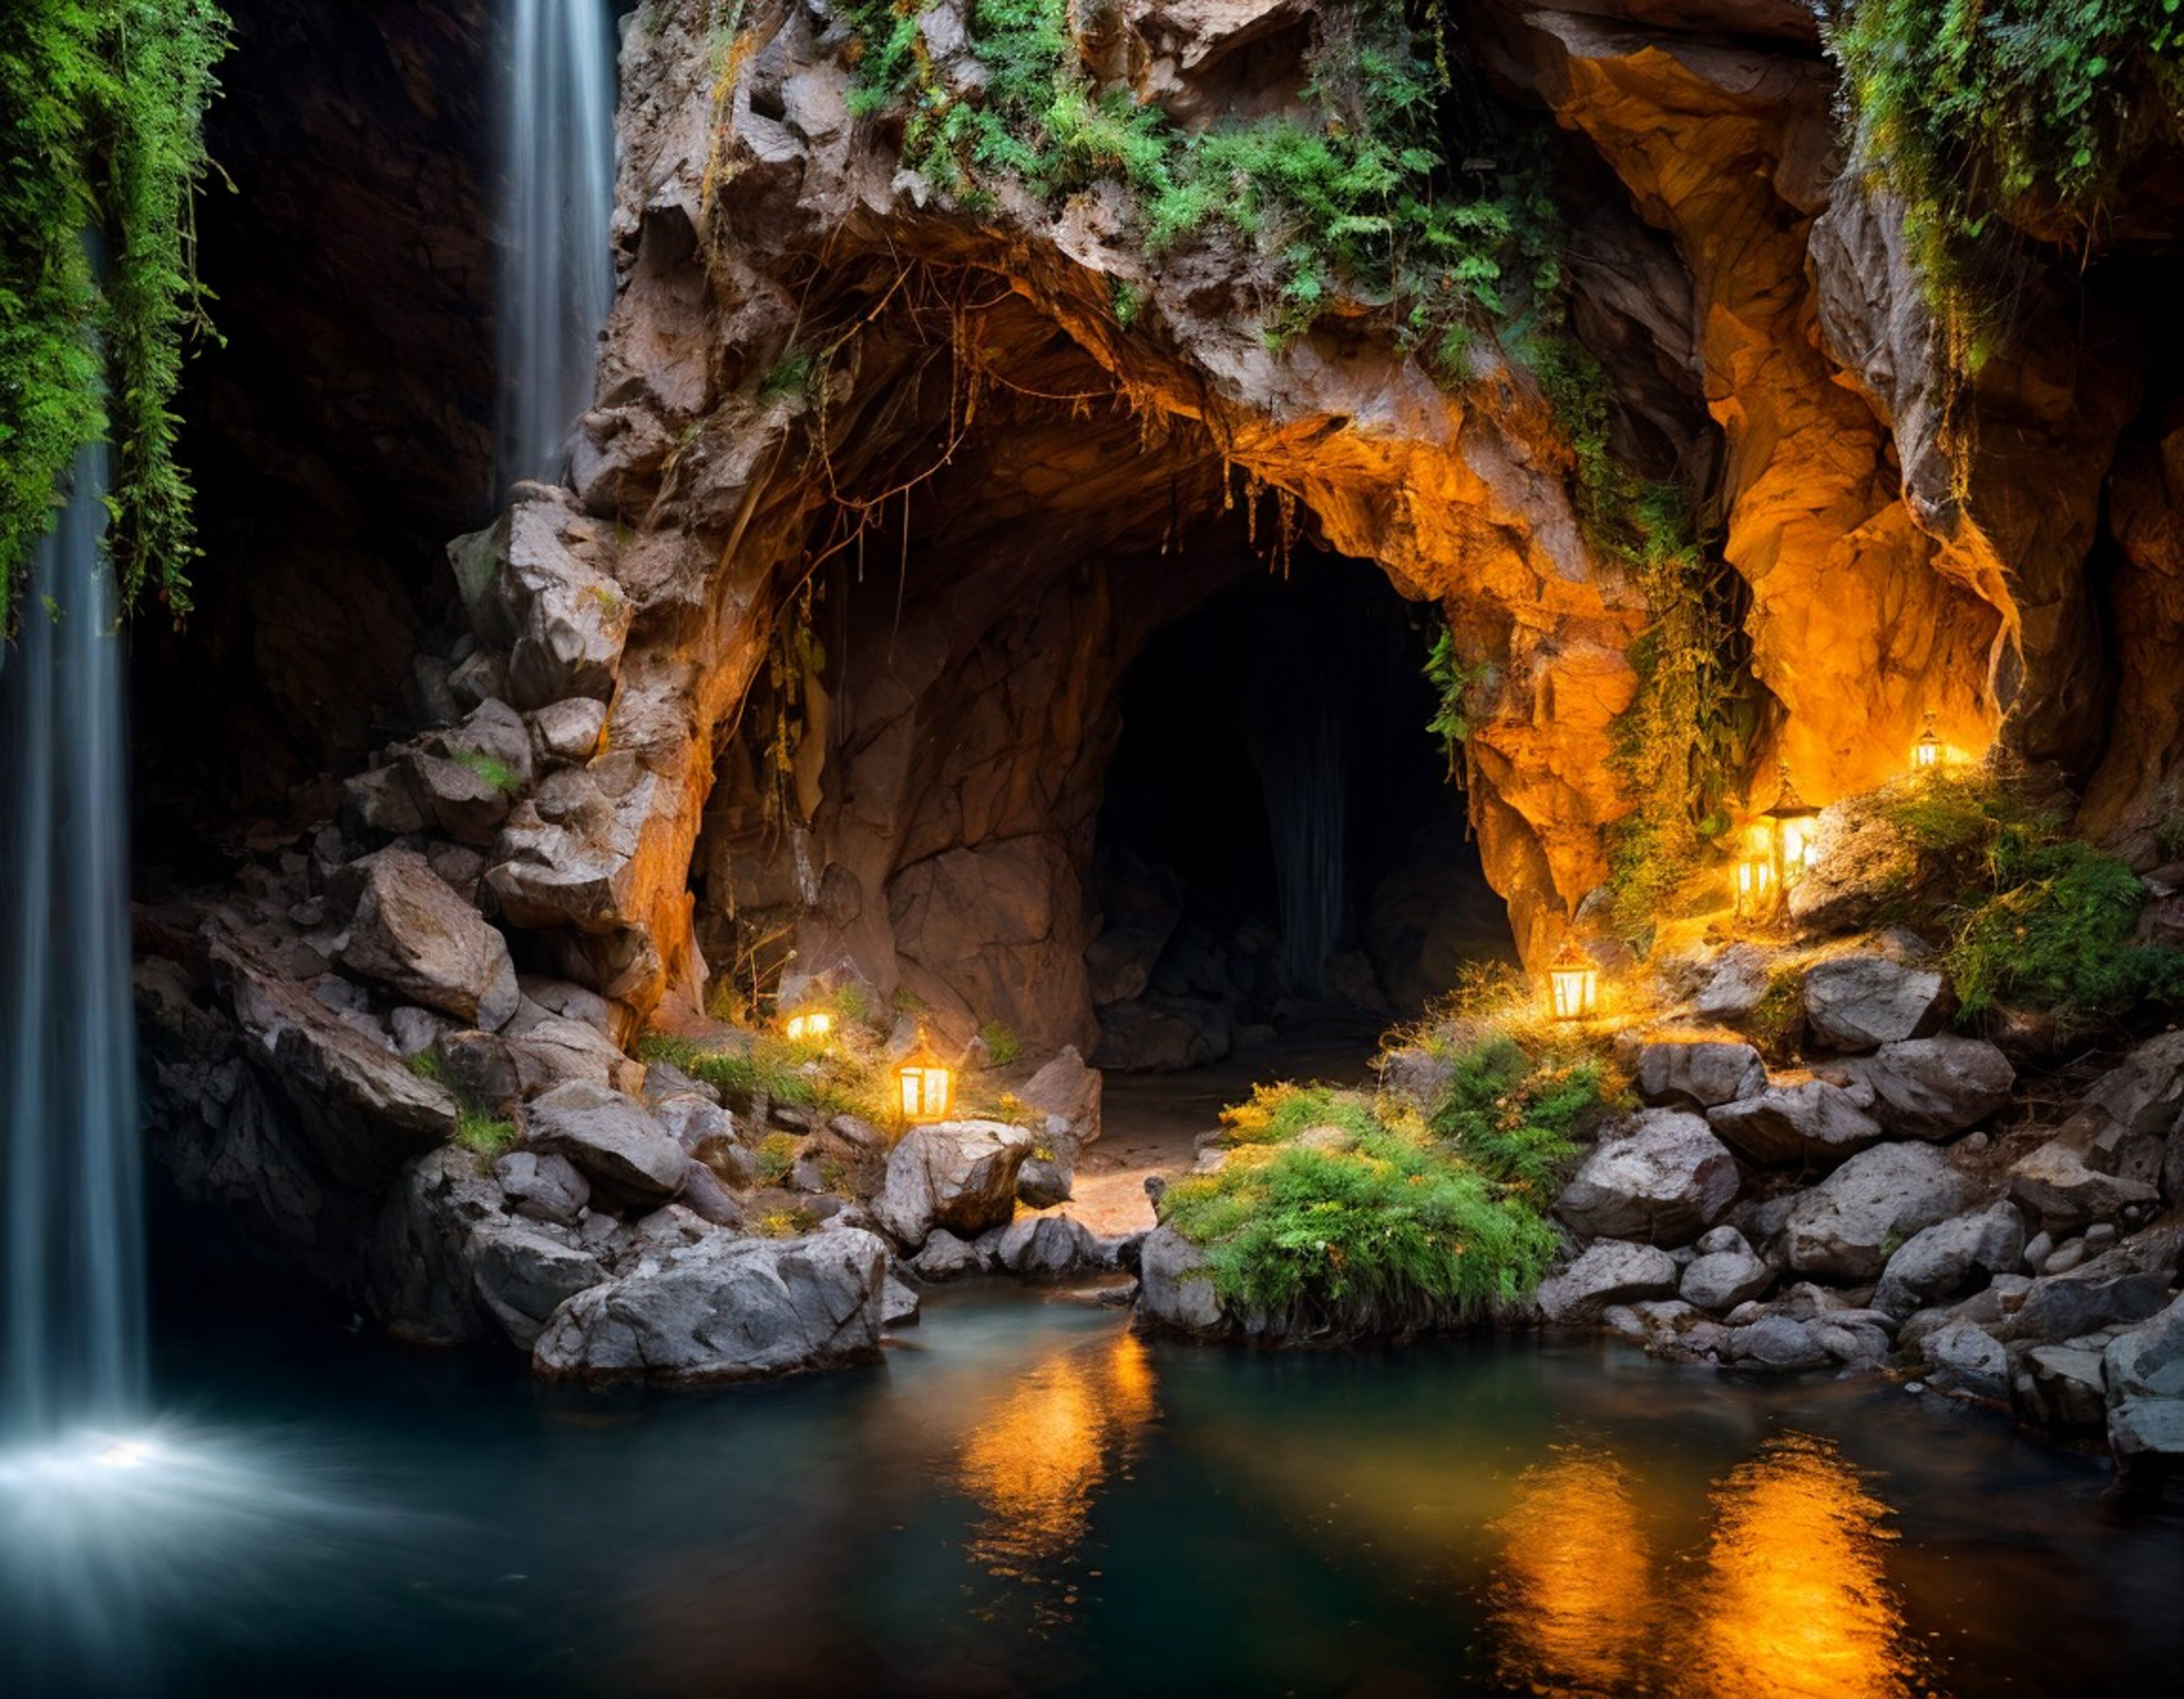 Illuminated grotto